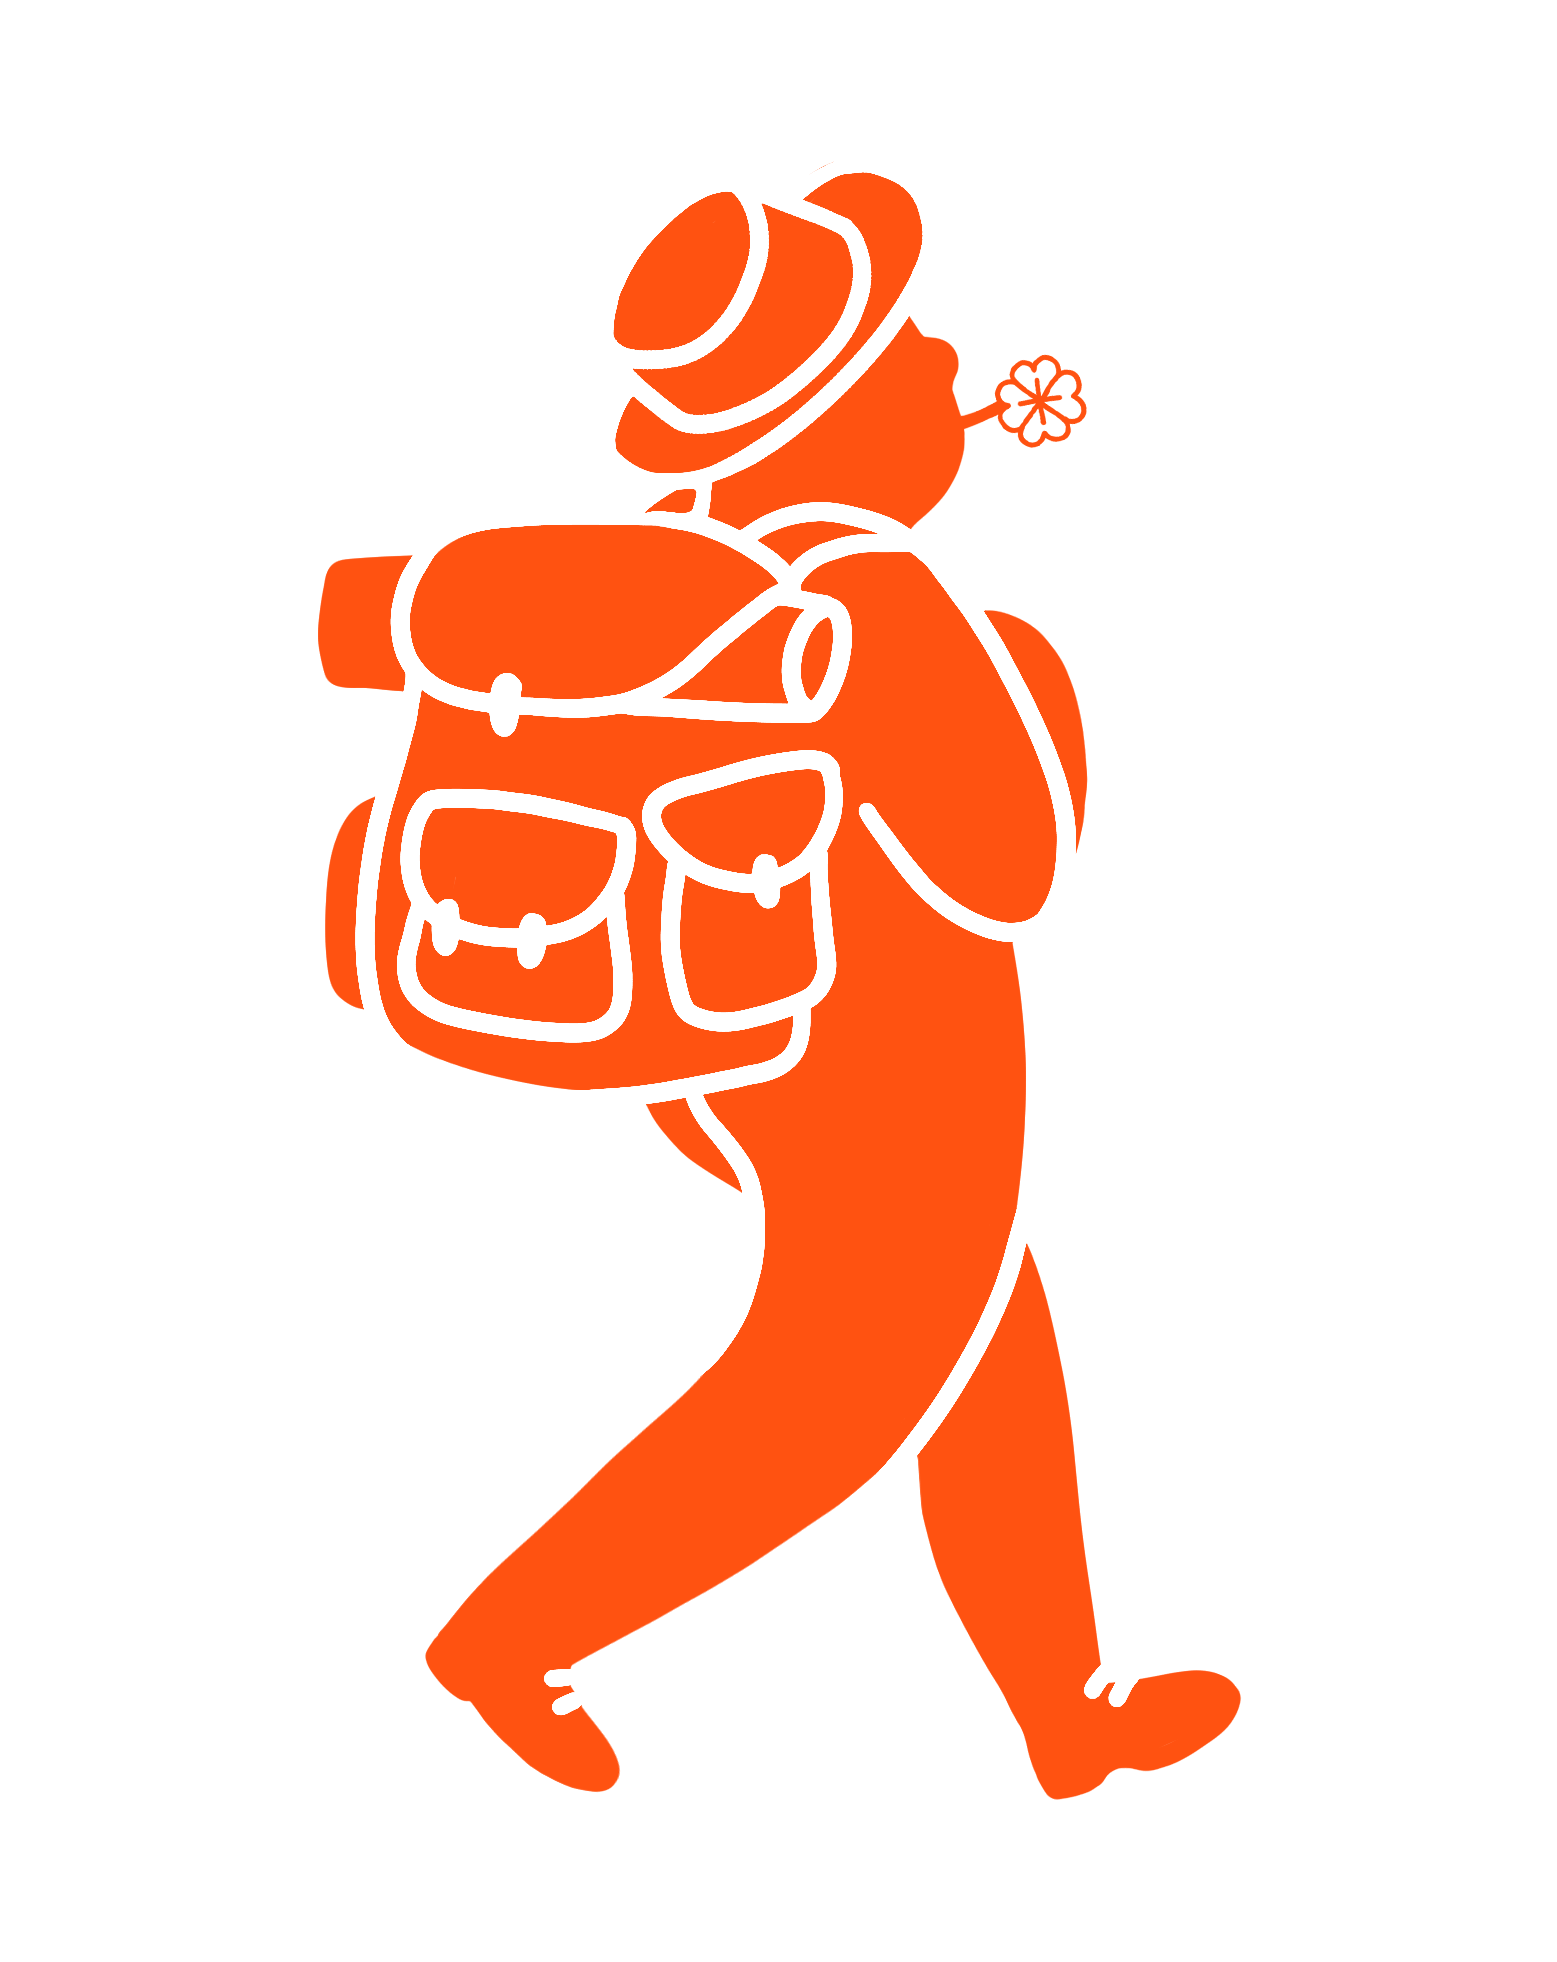 Randonneur orange avec son sac à dos et un trèfle en bouche qui avance sur son chemin